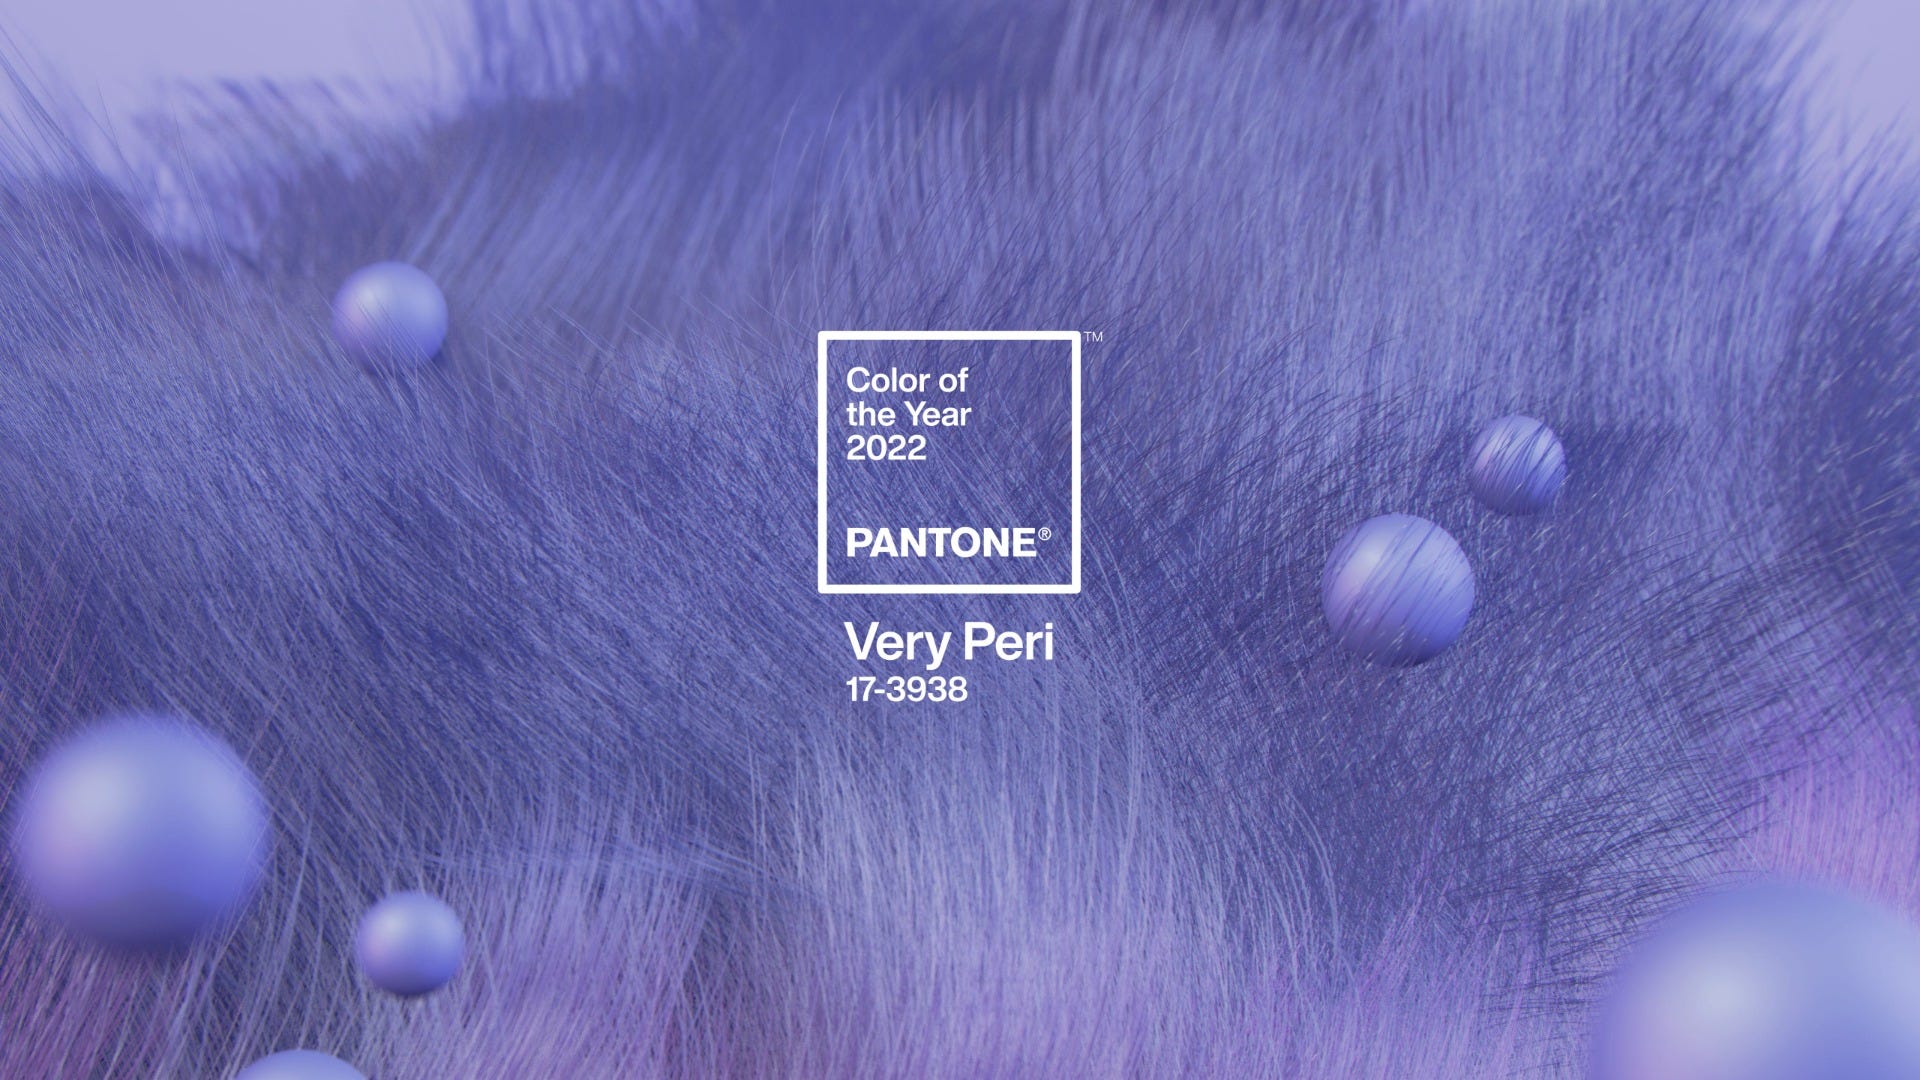 Pantone 17-3938 Very Peri